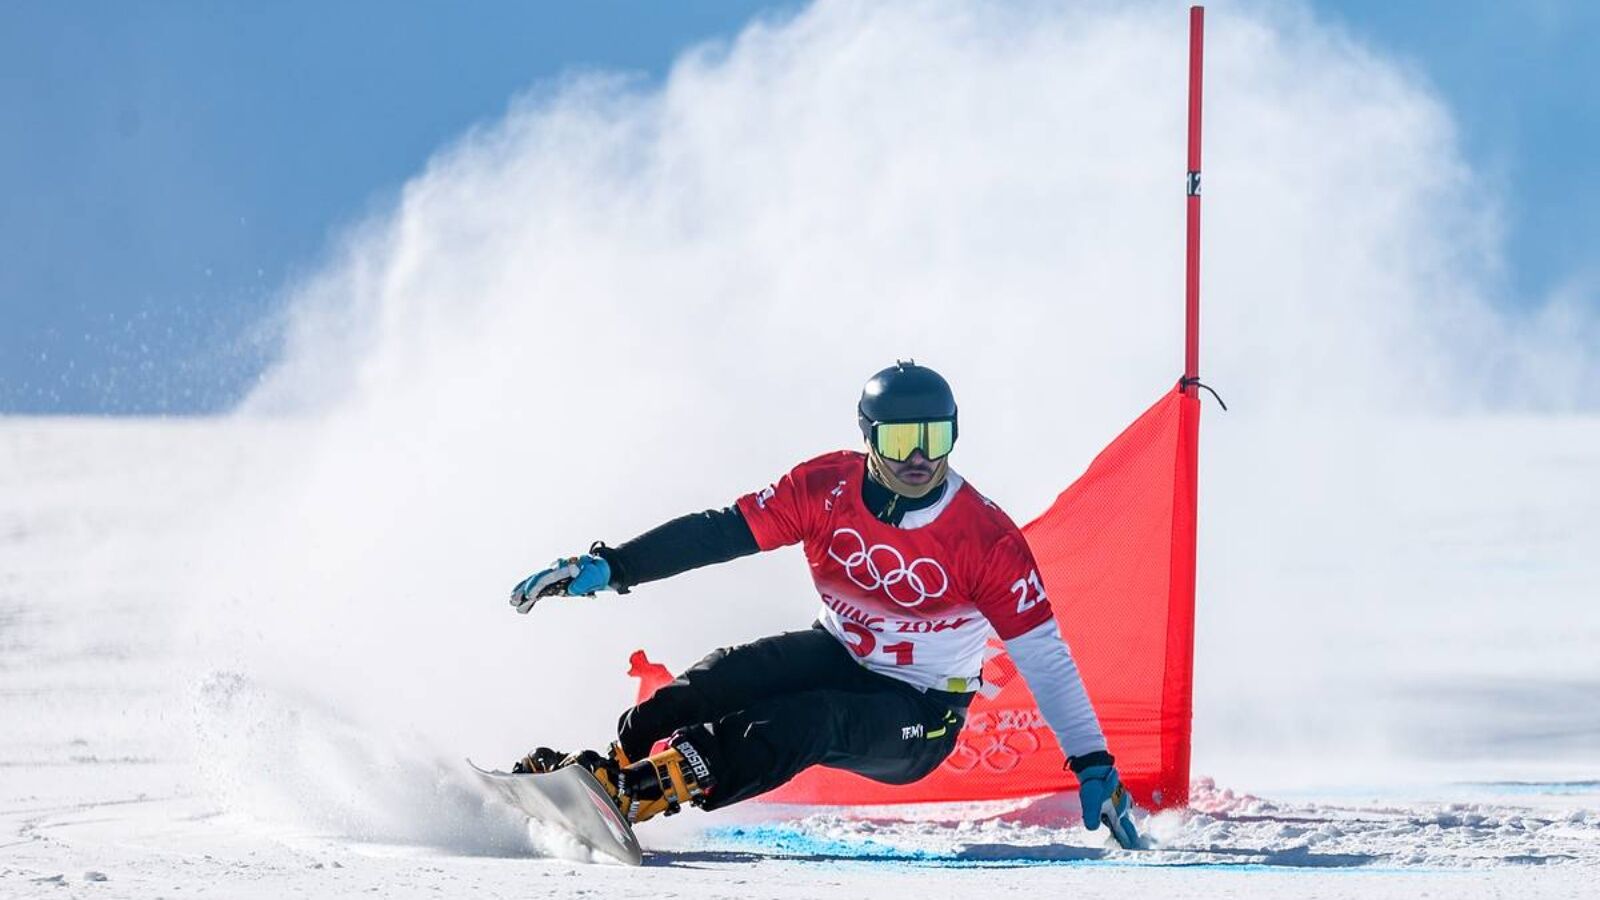 Татарстанский сноубордист Вик Уайлд получил бронзу в параллельном гигантском слаломе